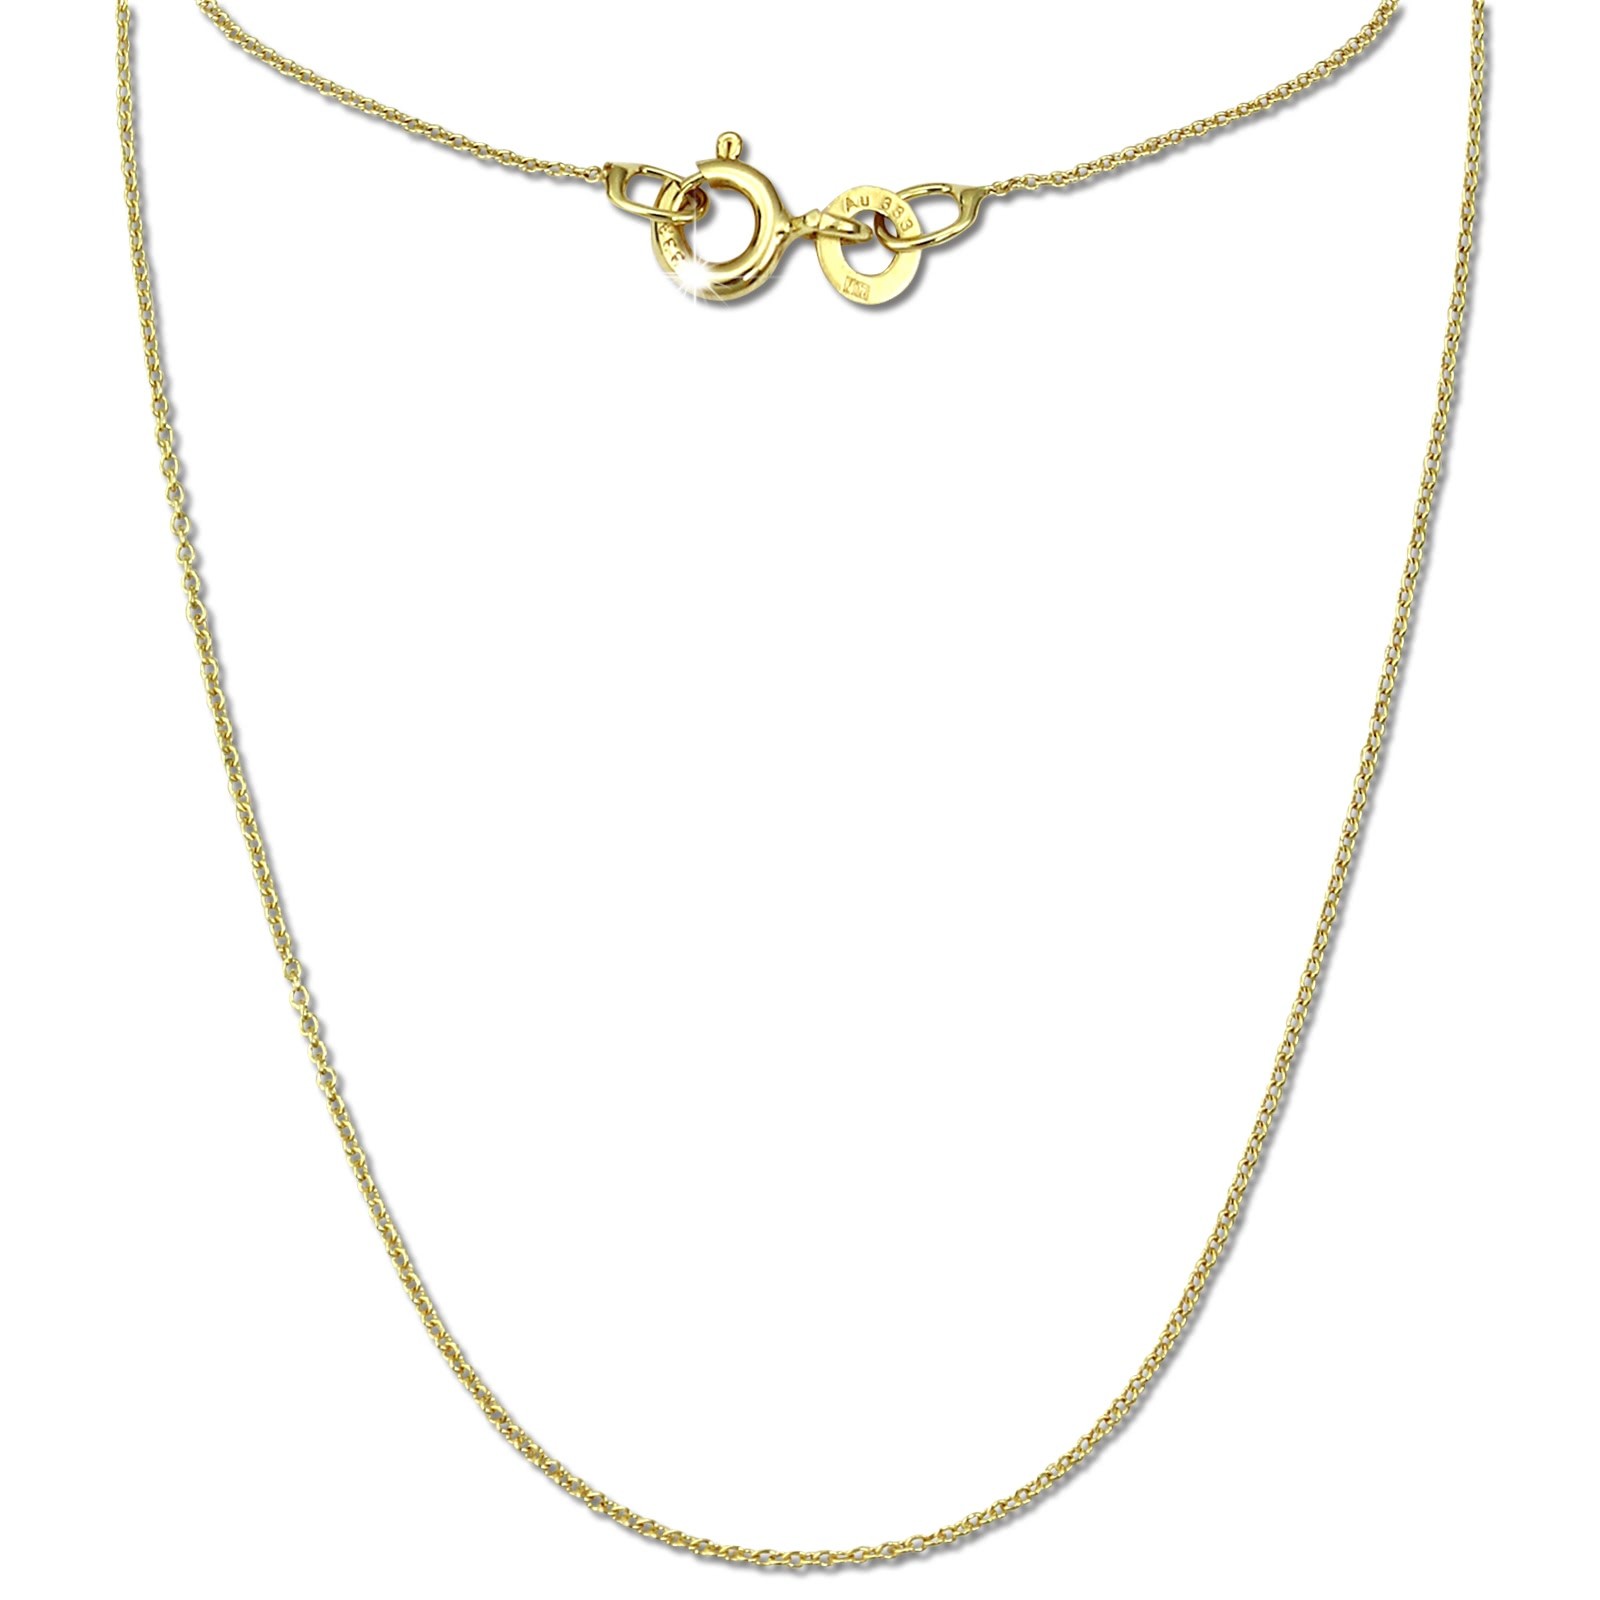 GoldDream Damen Colliers Halskette 40cm Gelbgold 8 Karat GDKB00540Y